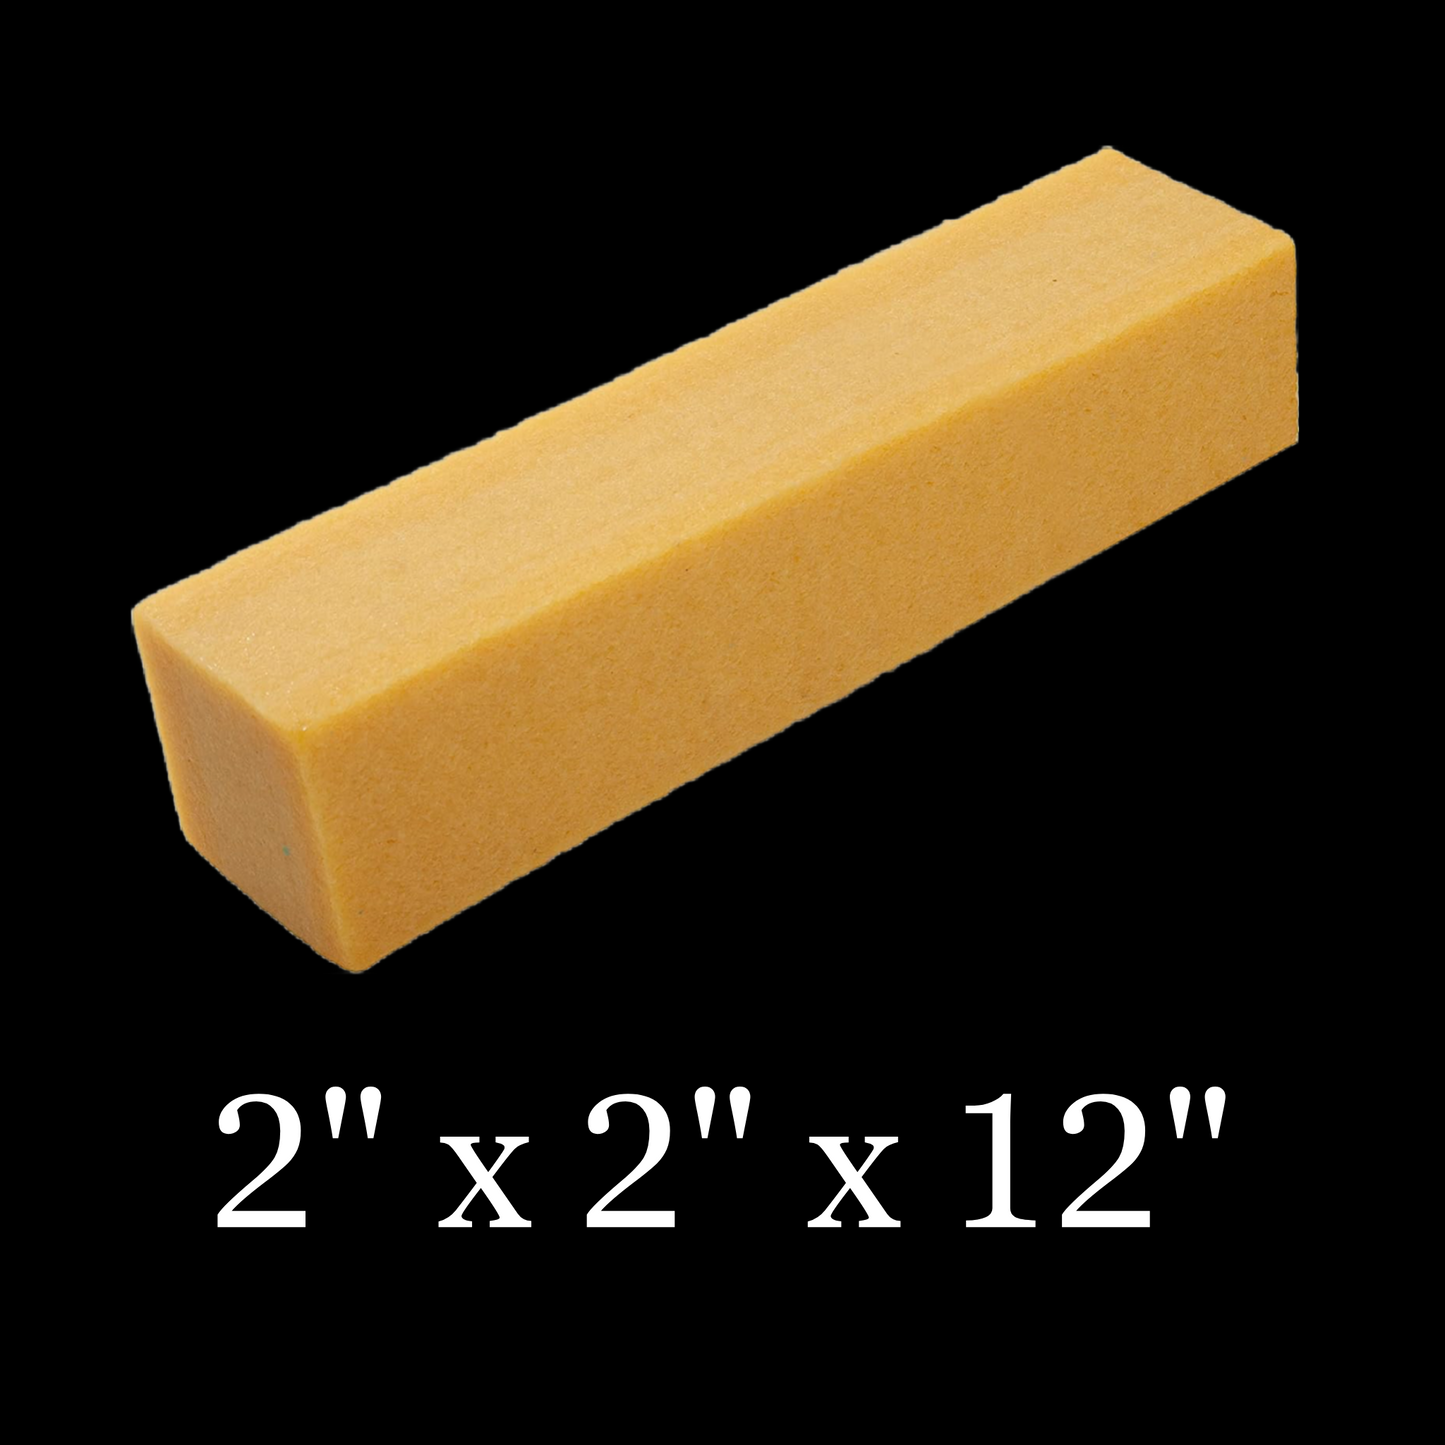 Rubber Belt Eraser Cleaner 2” x 2” x 12”